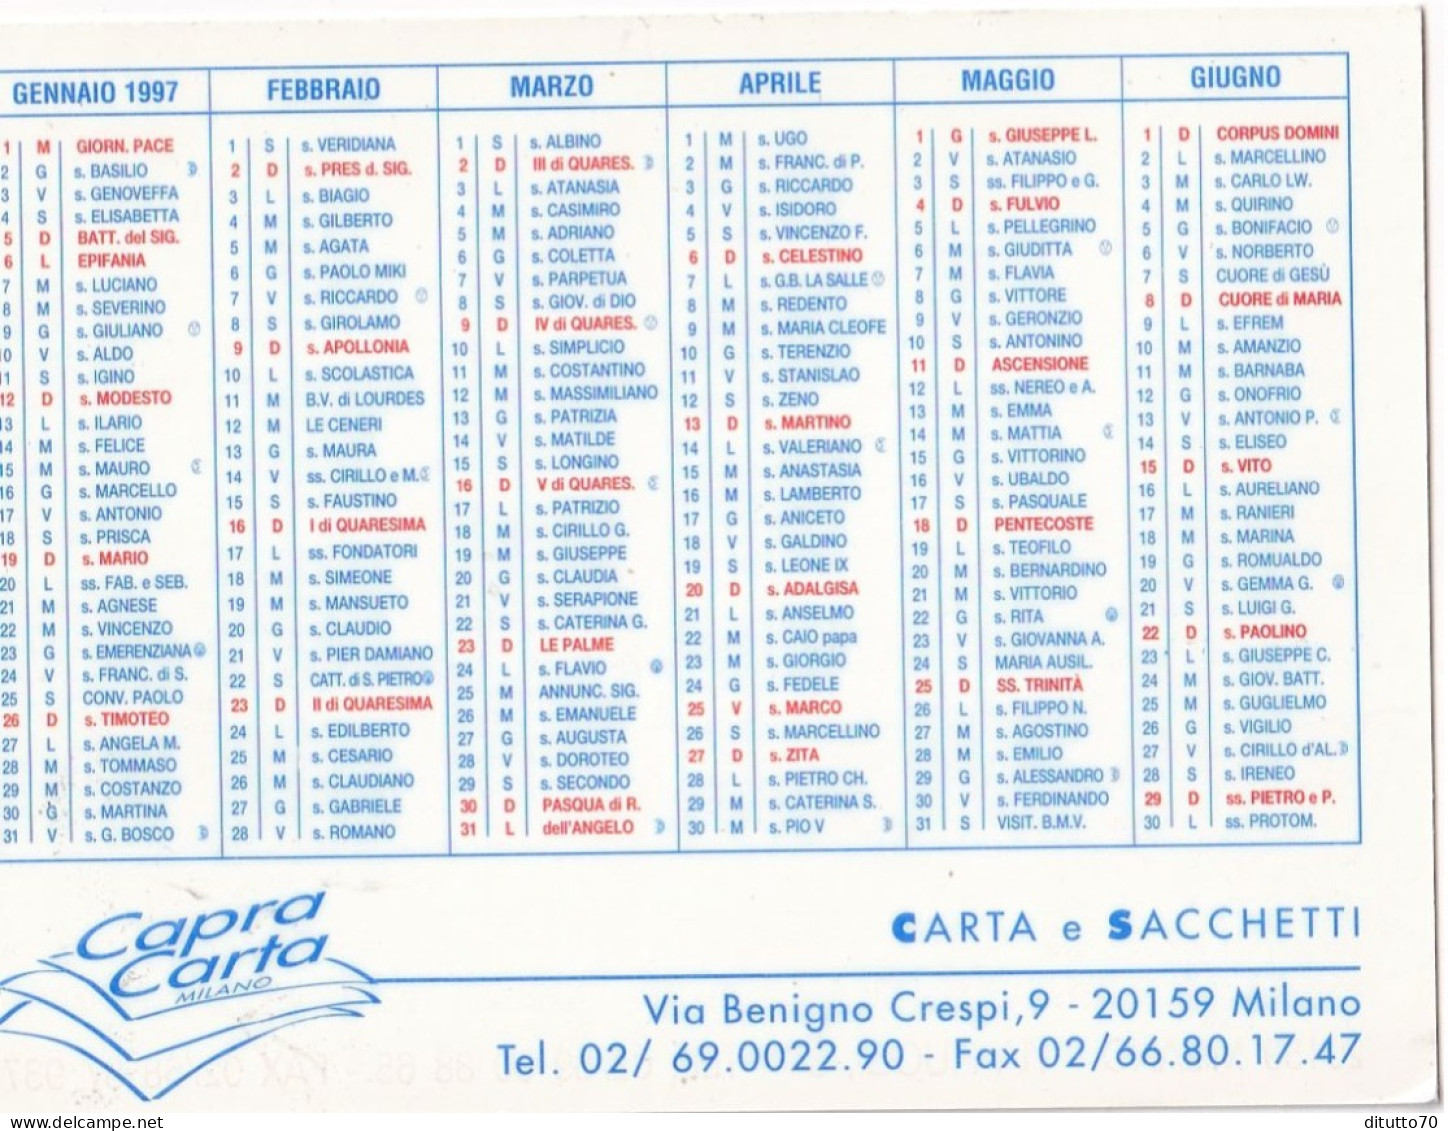 Calendarietto - Capra Carta - Miano - Anno 1997 - Tamaño Pequeño : 1991-00